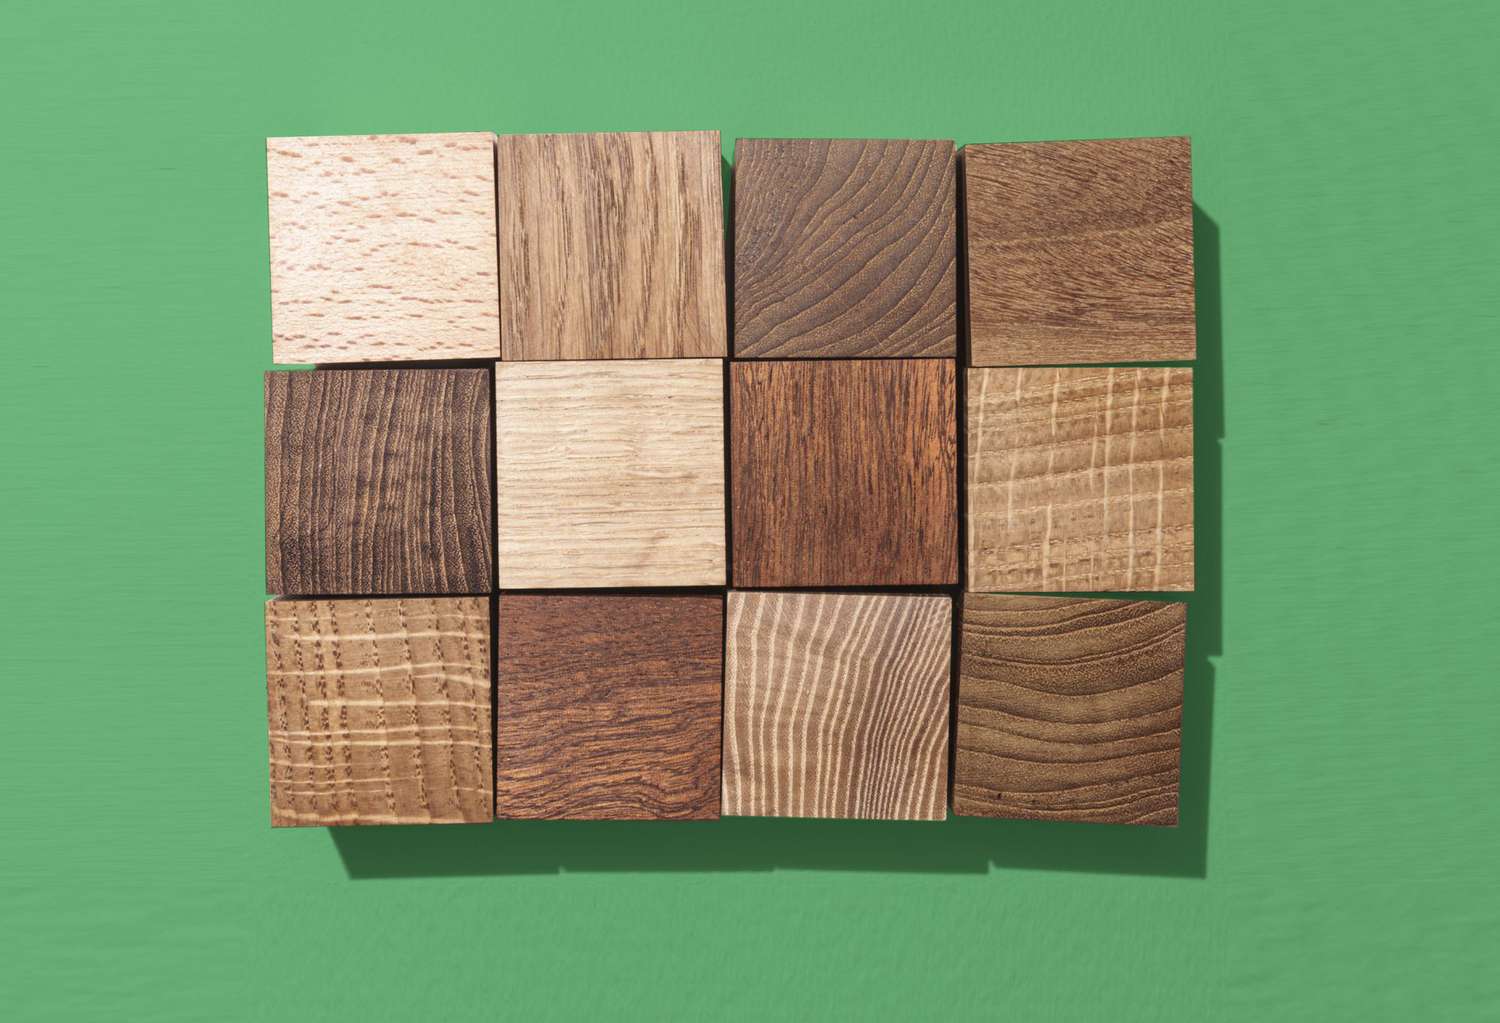 أنواع الخشب المستخدم في الأثاث